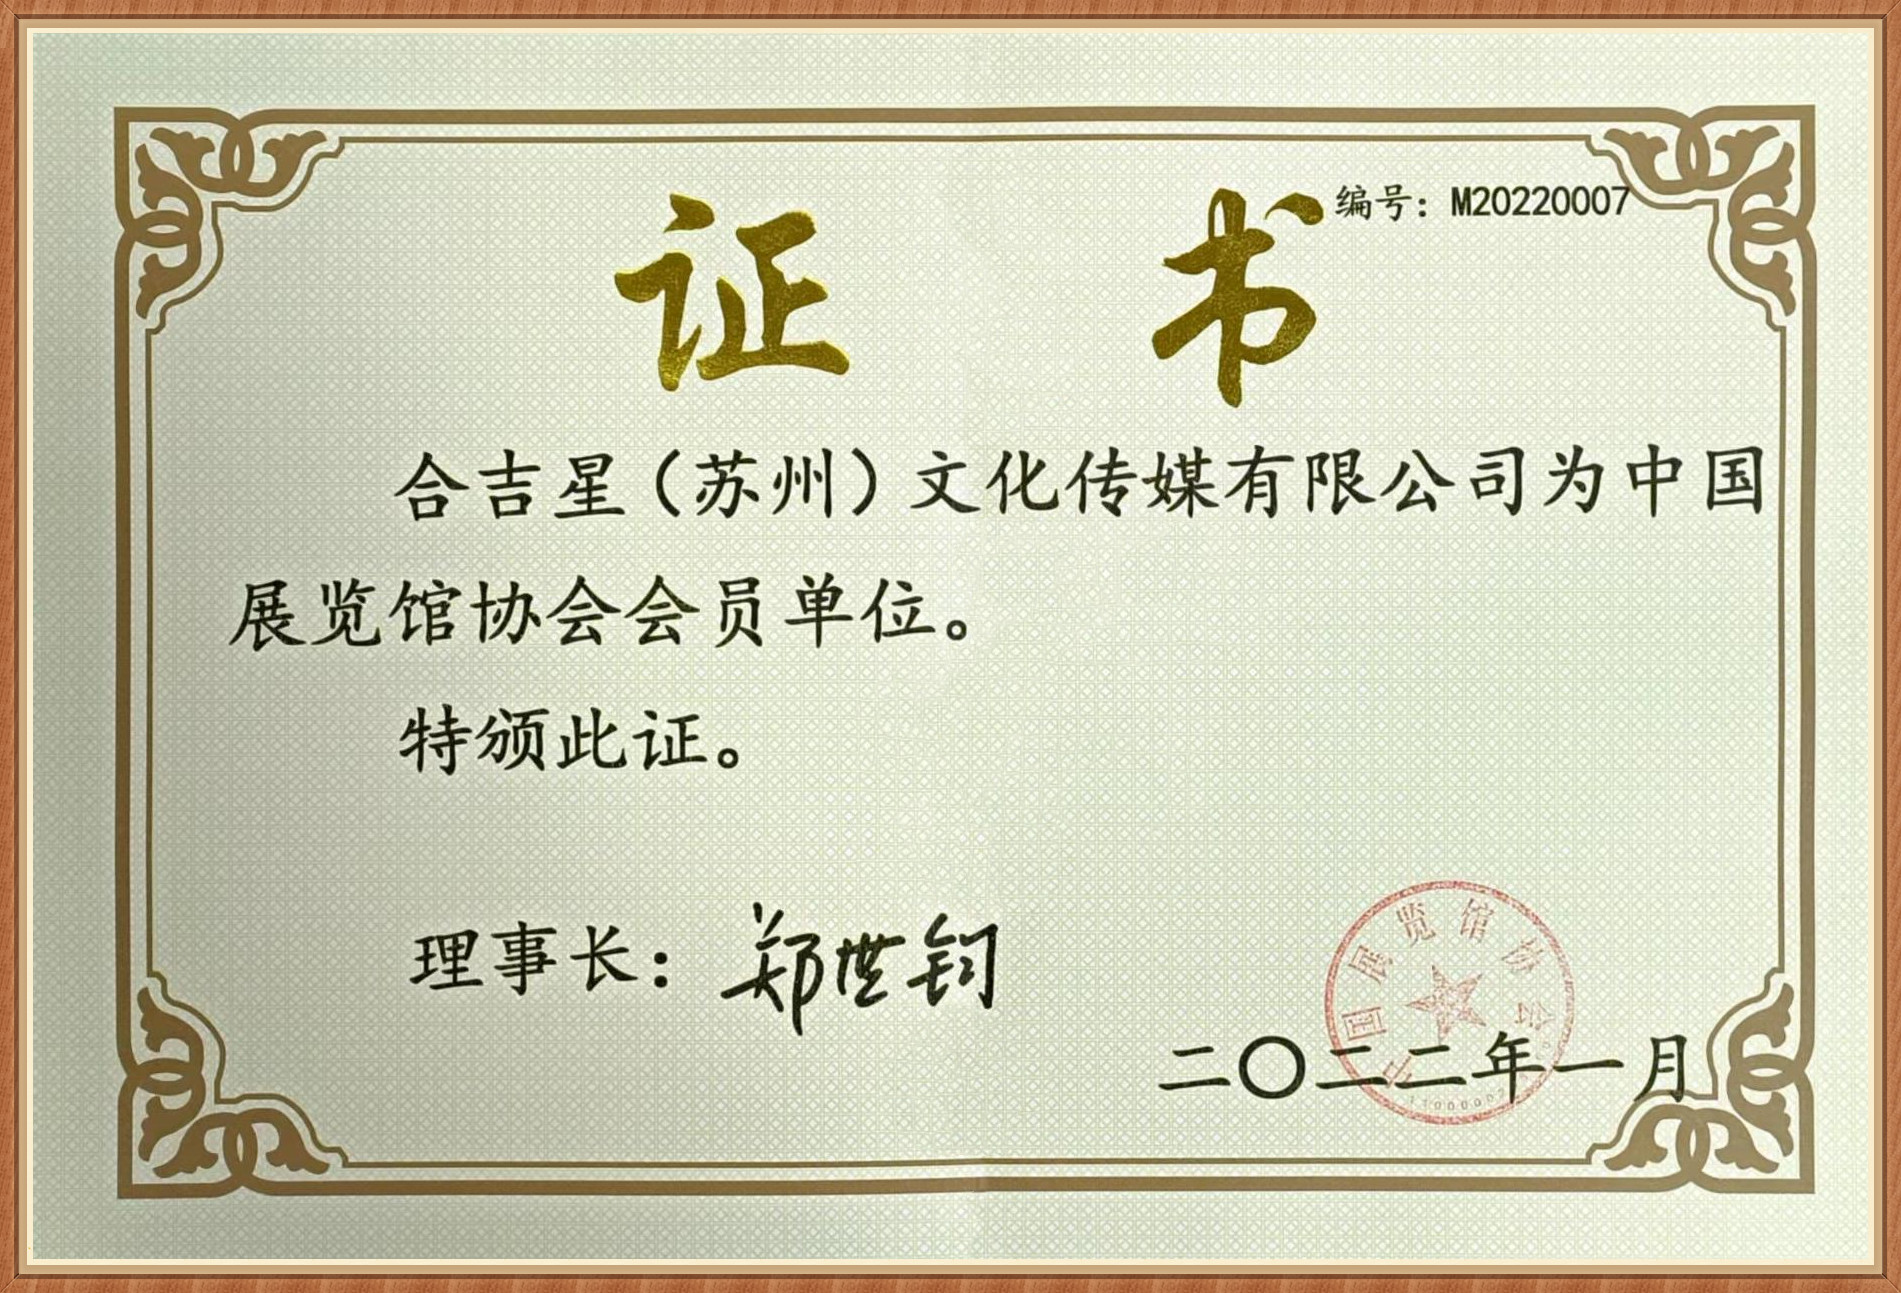 中国展览馆协会会员单位证书